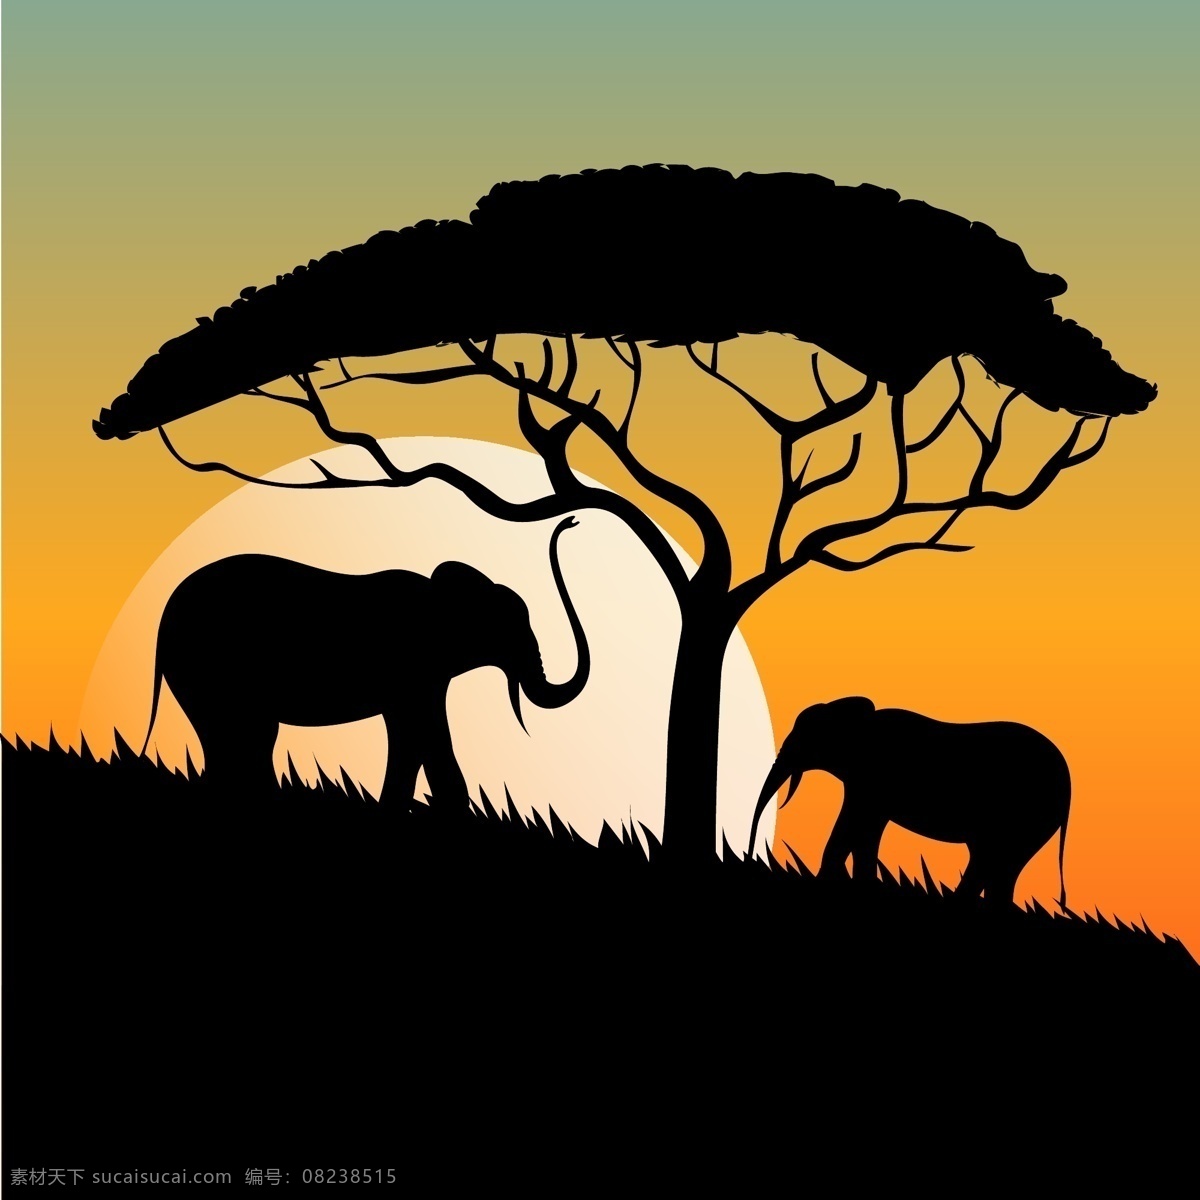 夕阳 下 大象 树木 剪影 剪影素材 草原 矢量素材